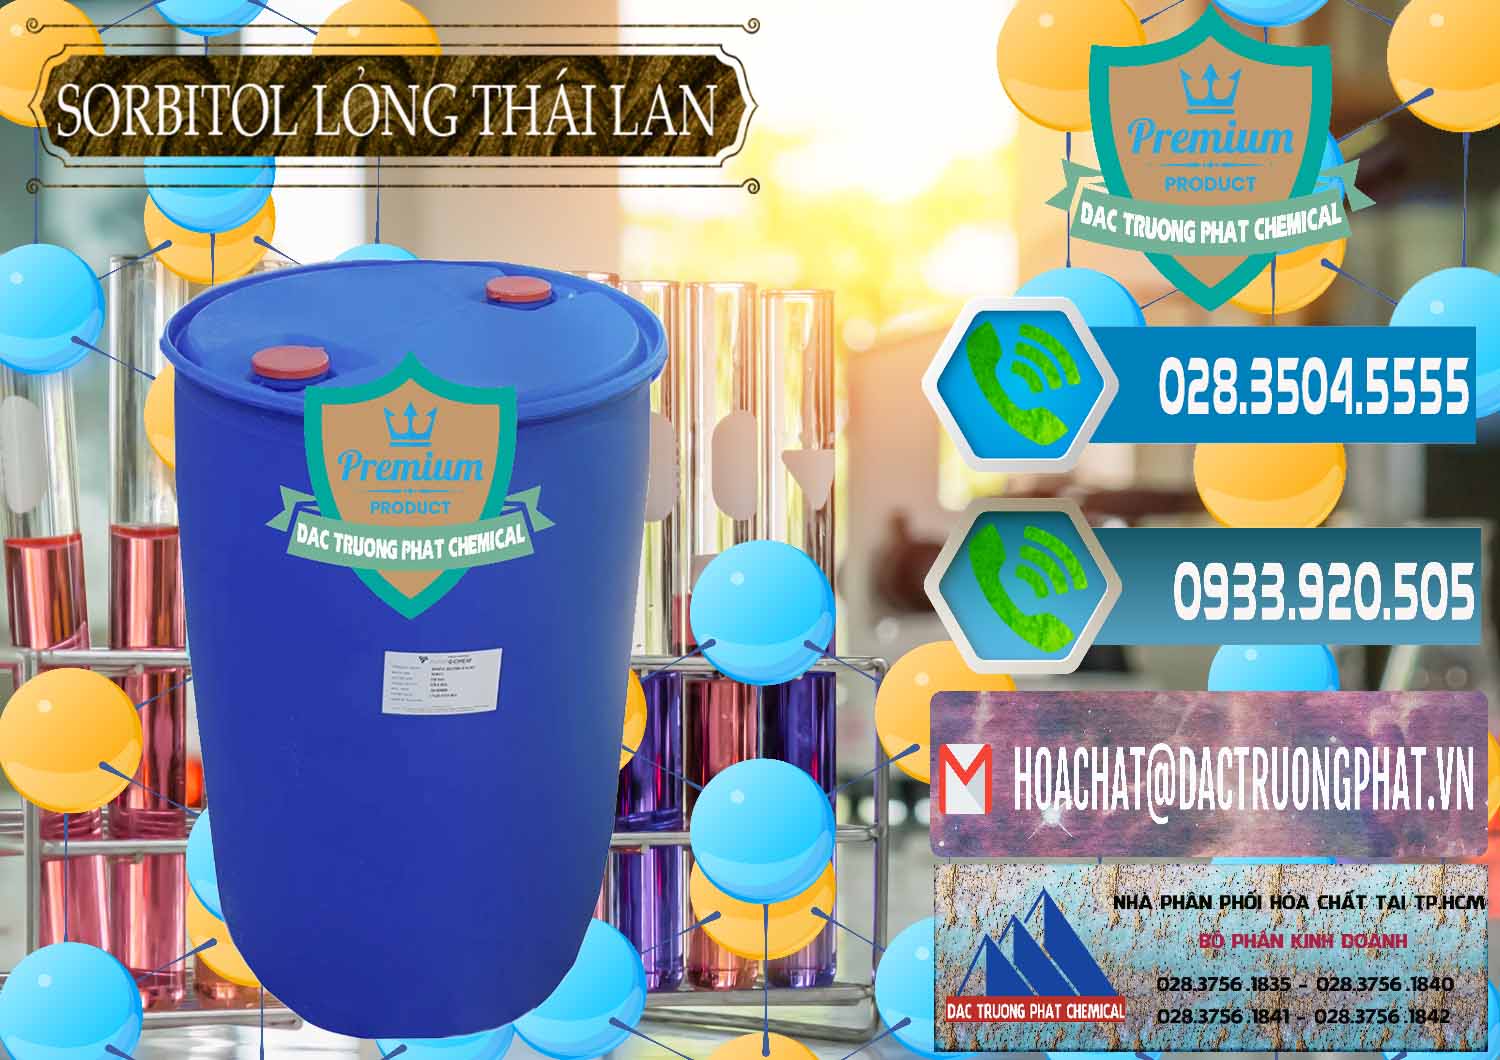 Cty chuyên bán - cung ứng Sorbitol - C6H14O6 Lỏng 70% Food Grade Thái Lan Thailand - 0341 - Chuyên bán - cung cấp hóa chất tại TP.HCM - congtyhoachat.net